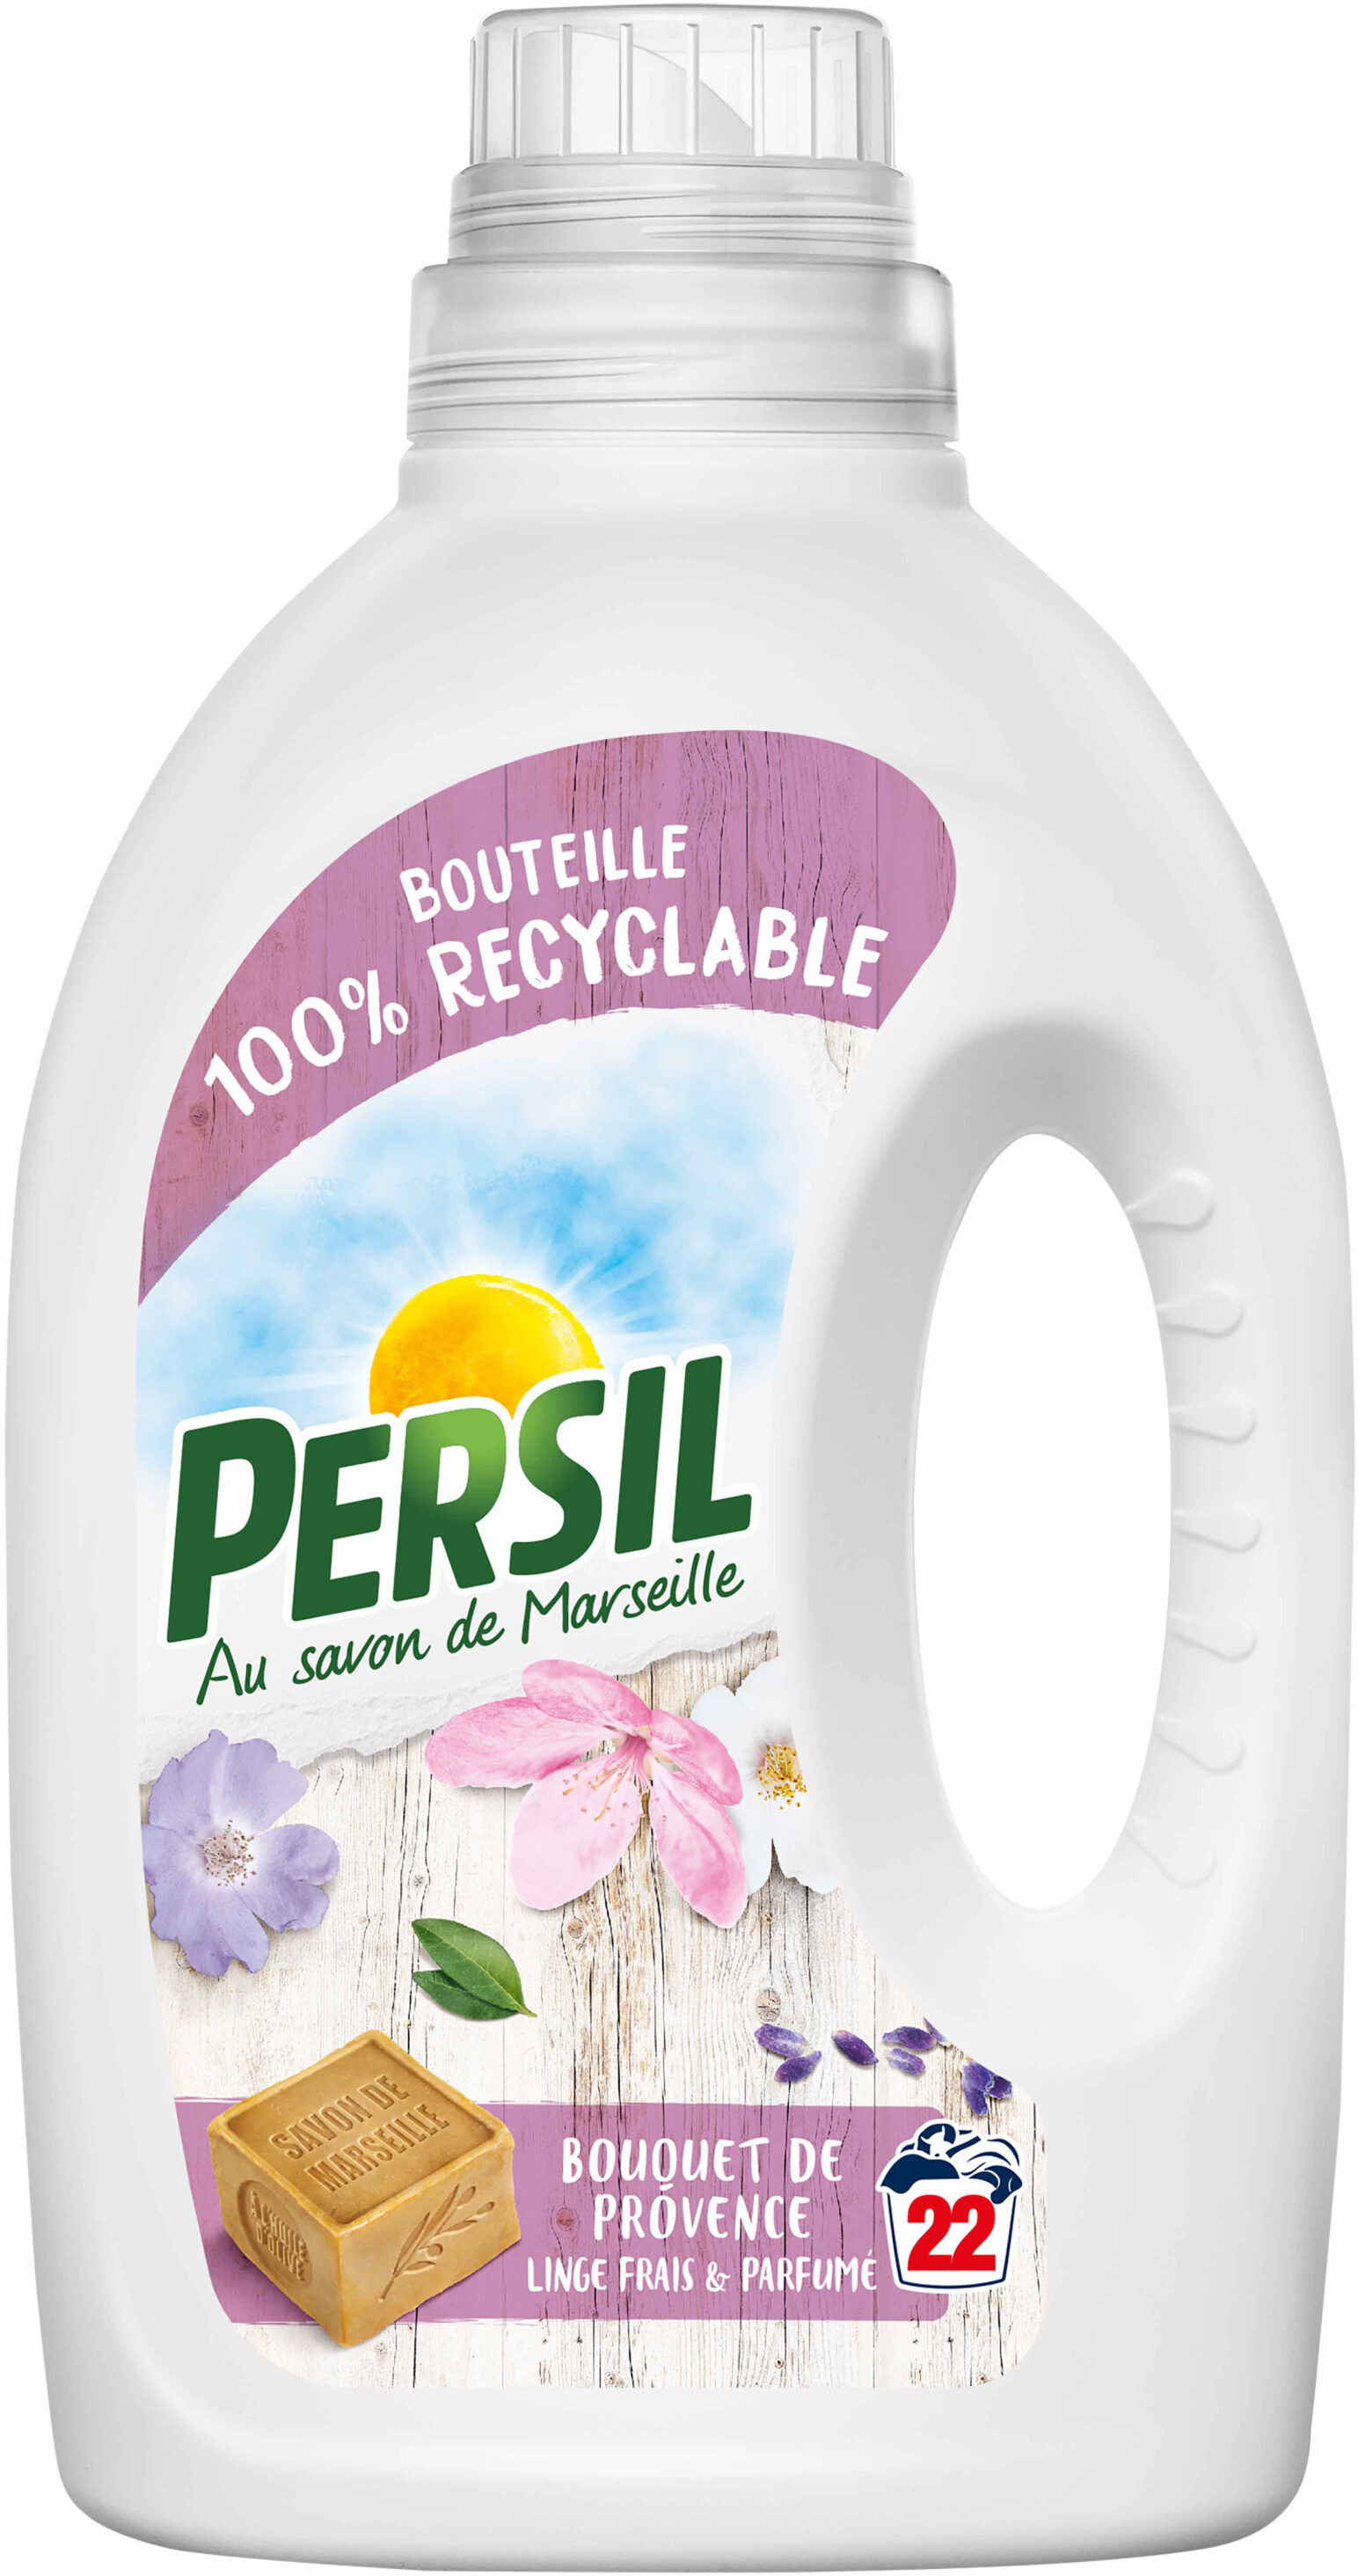 Persil Lessive Liquide Bouquet de Provence 1,1l 22 Lavages - Product - fr